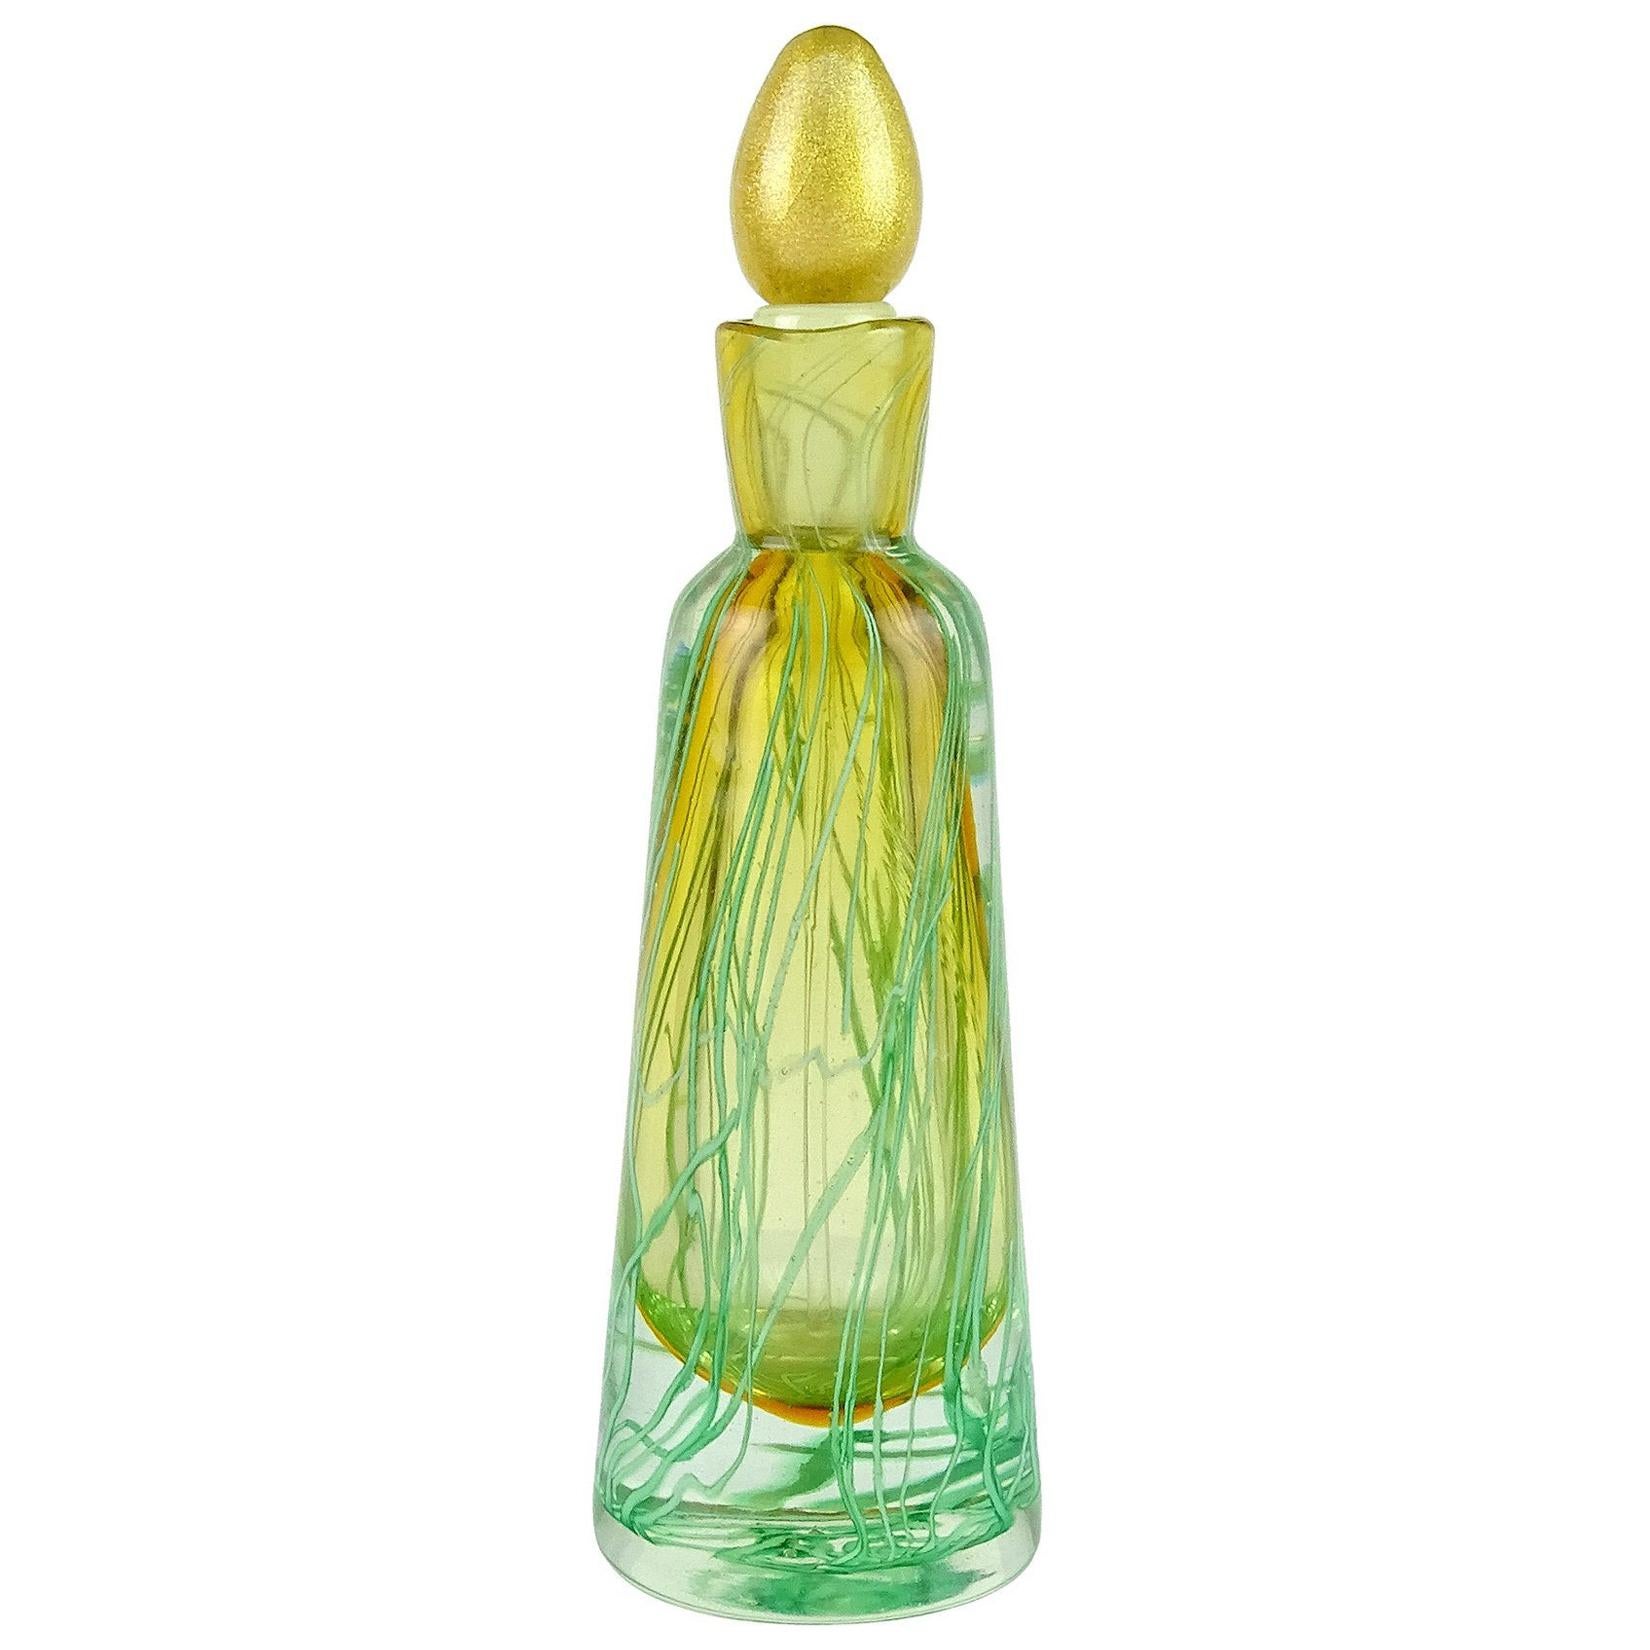 Murano Sommerso Green Ribbons Gold Stopper Italian Art Glass Perfume Bottle